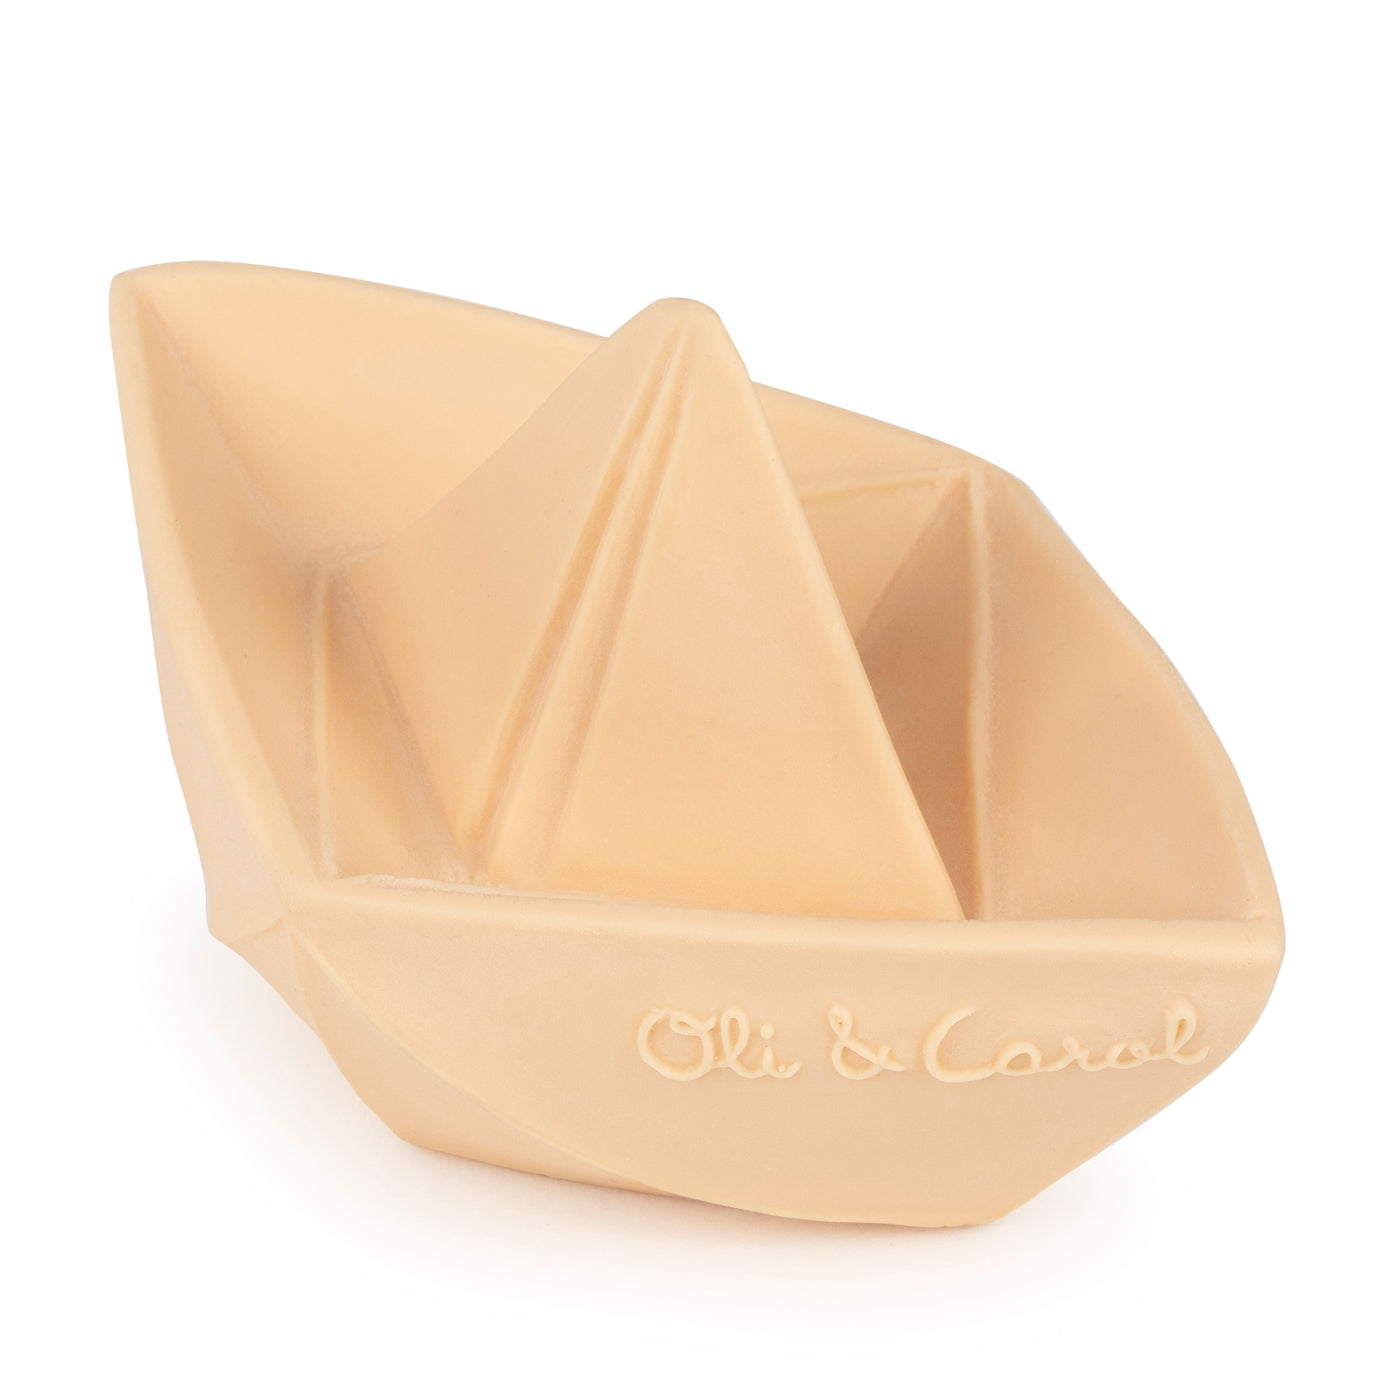 Oli & Carol Origami/Organic Bathboats/Badeboot wahlweise in nude oder mint ca. B7,2xL11,0xH6,8cm